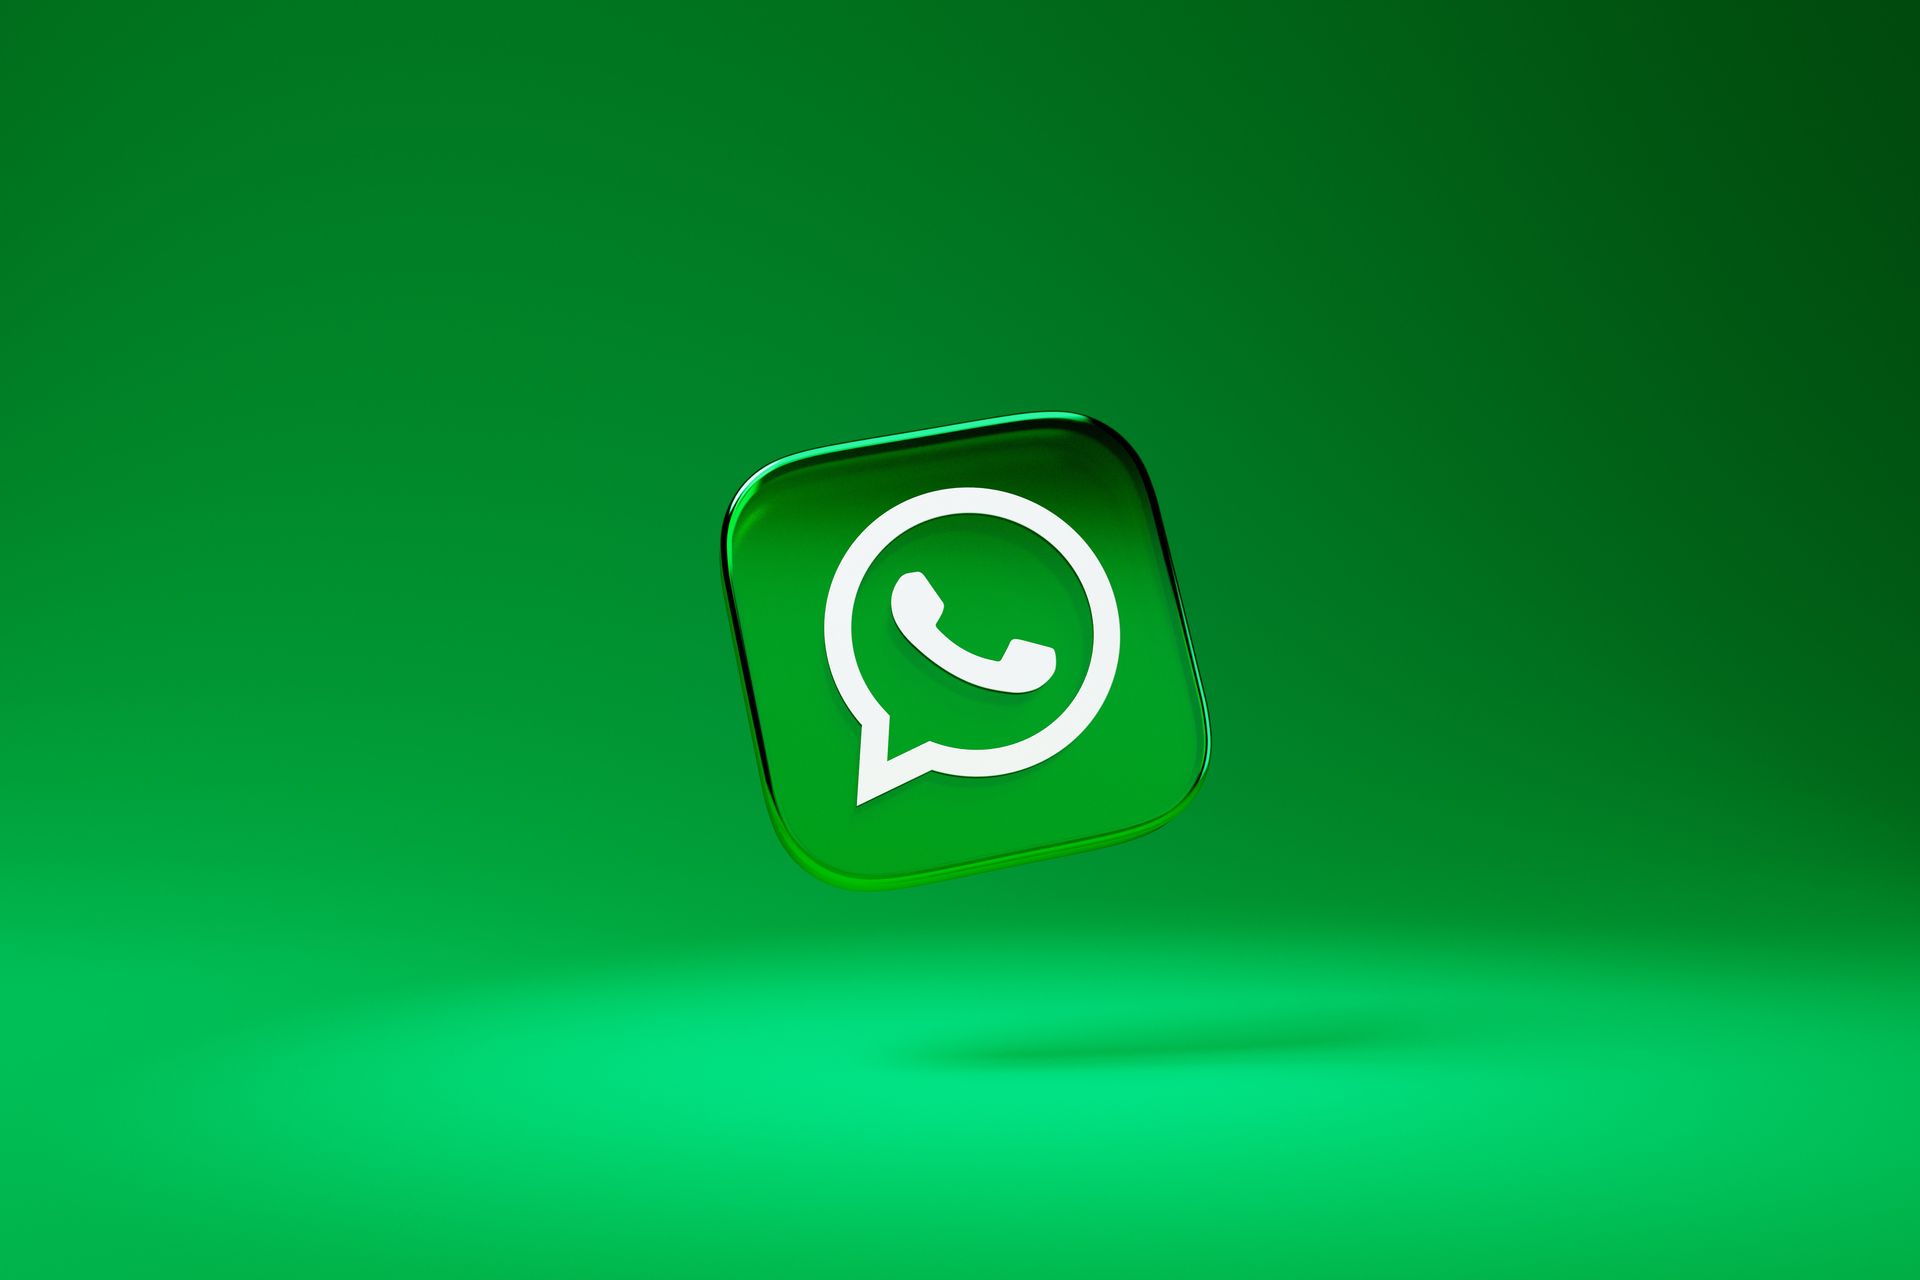 Yabancı ülkelerden gelen Whatsapp mesajları can sıkıyor